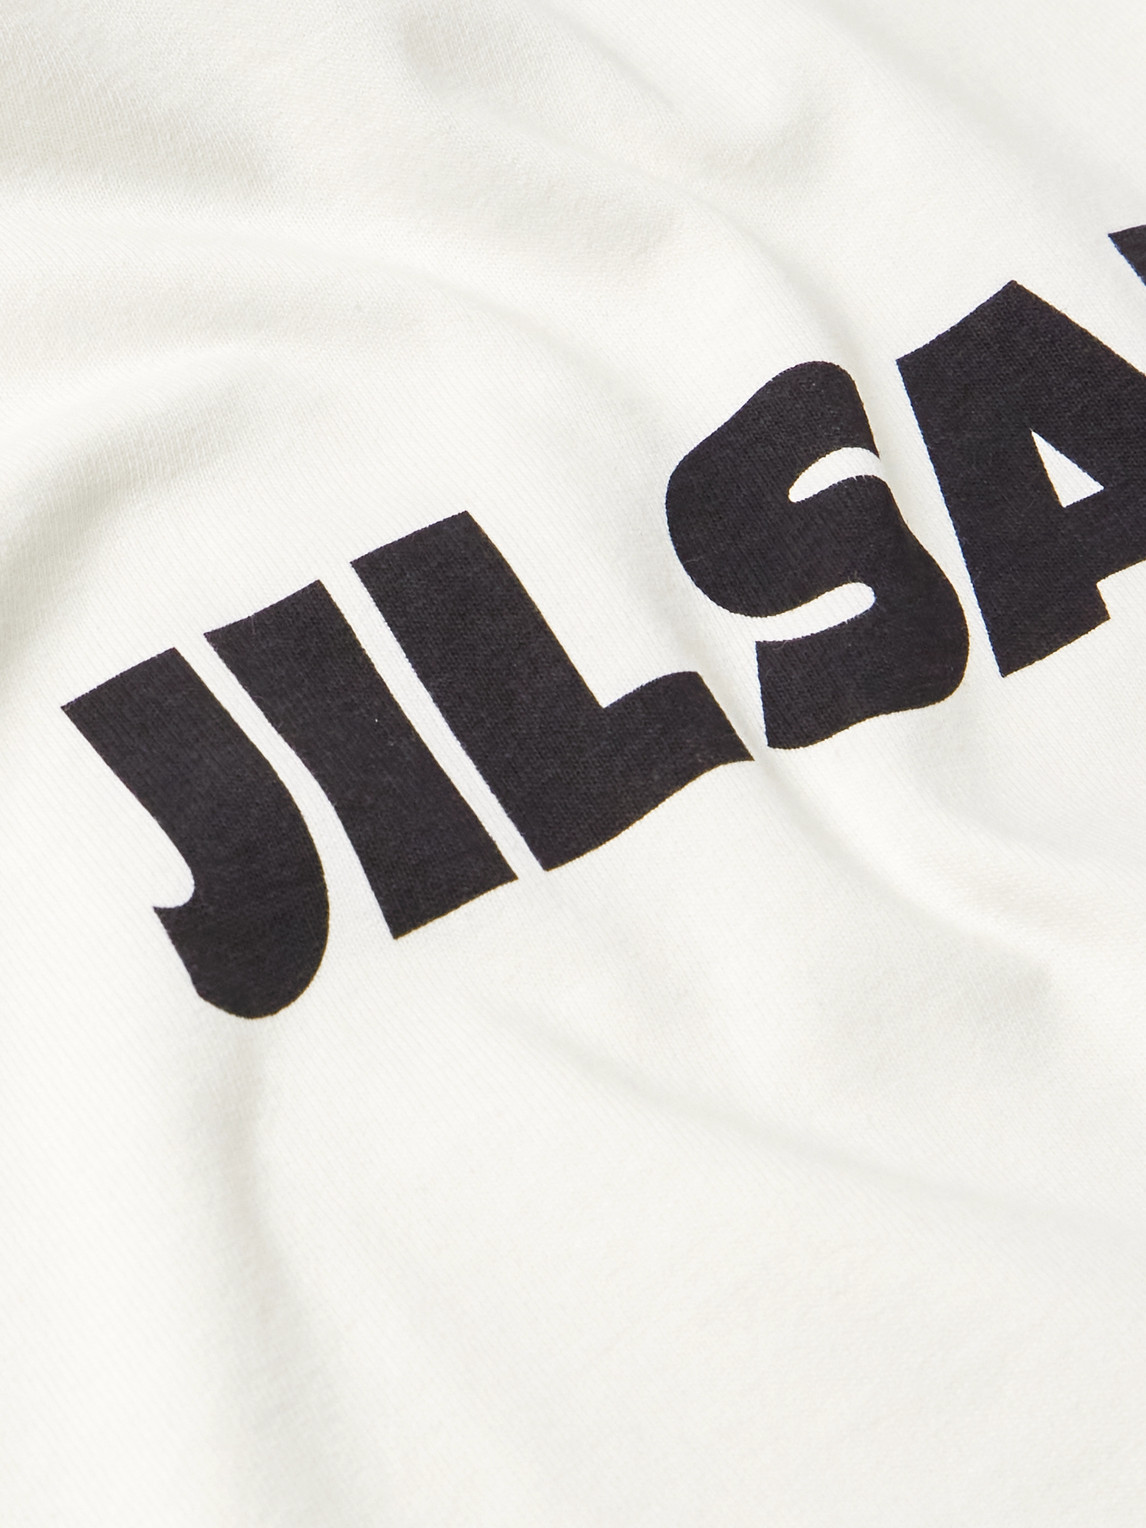 Shop Jil Sander Logo-print Cotton-jersey T-shirt In White